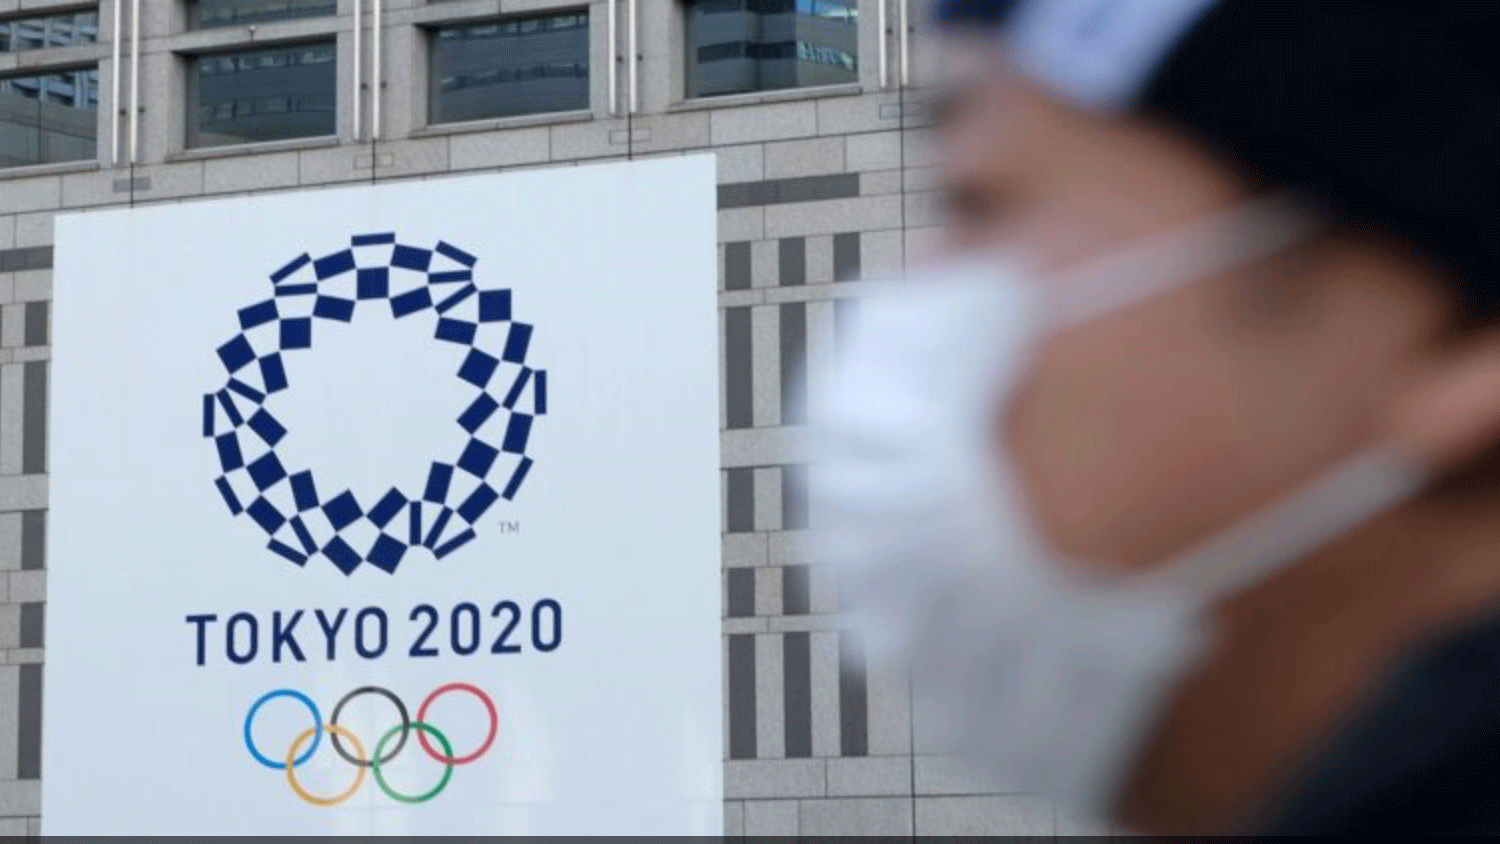 طوكيو 2020: الألعاب الأولمبية بلا جماهير أجنبية